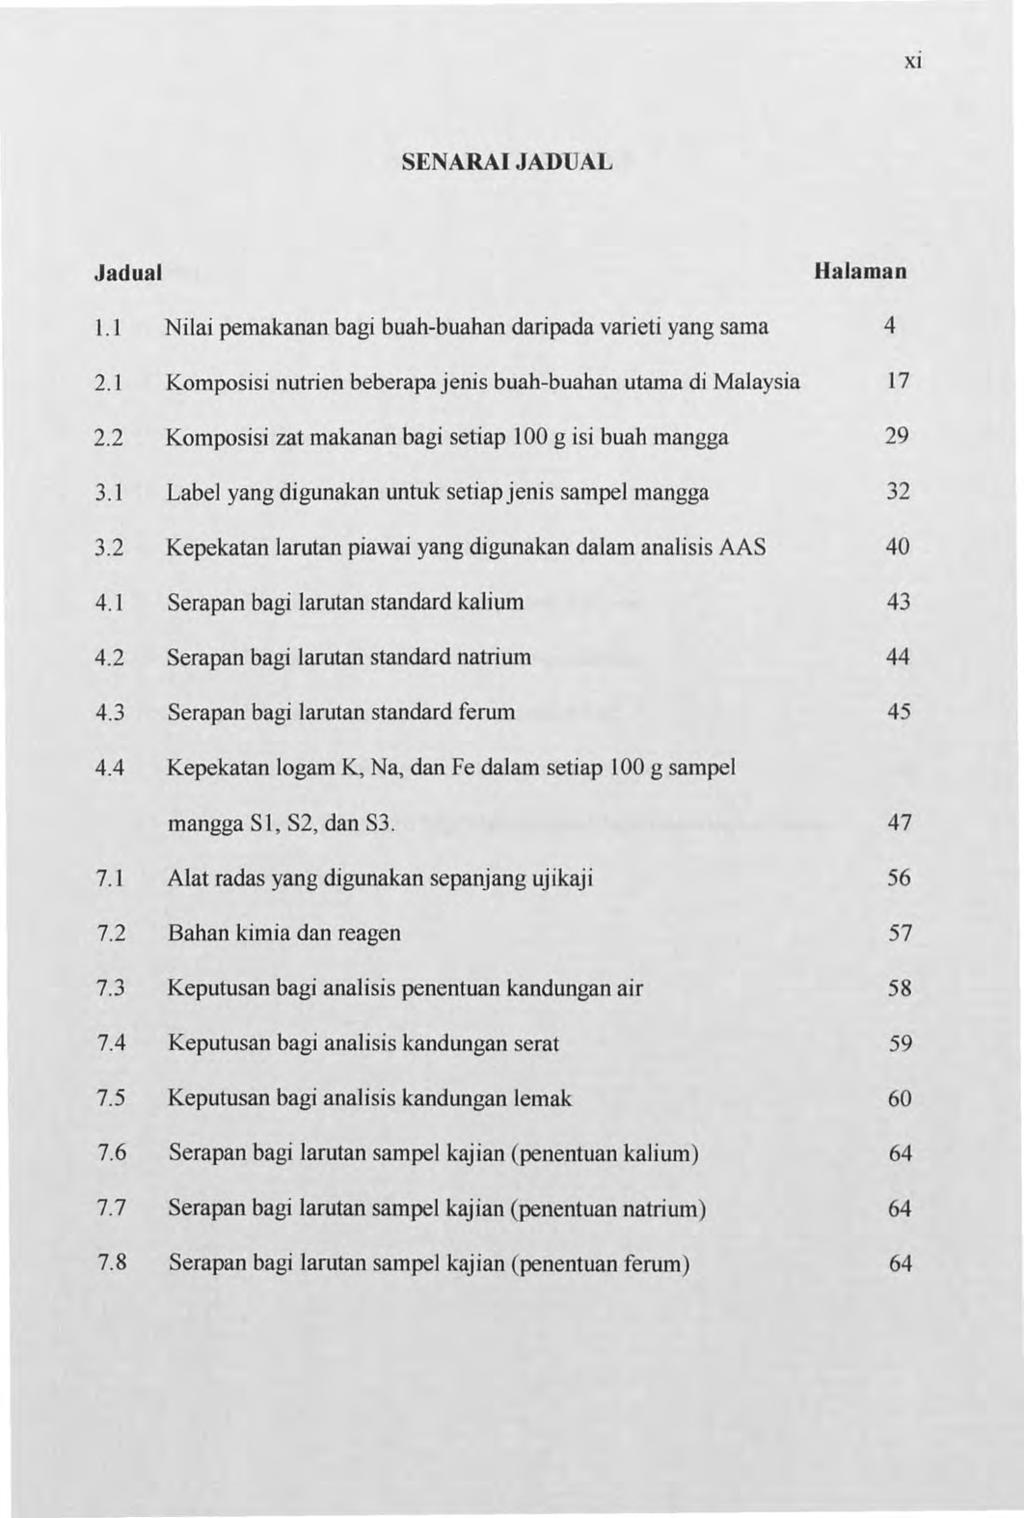 Xl SENARAI JADUAL Jadual Halaman l.1 Nilai pernakanan bagi buah-buahan daripada varieti yang sarna 4 2.1 Komposisi nutrien beberapa jenis buah-buahan utama di Malaysia 17 2.